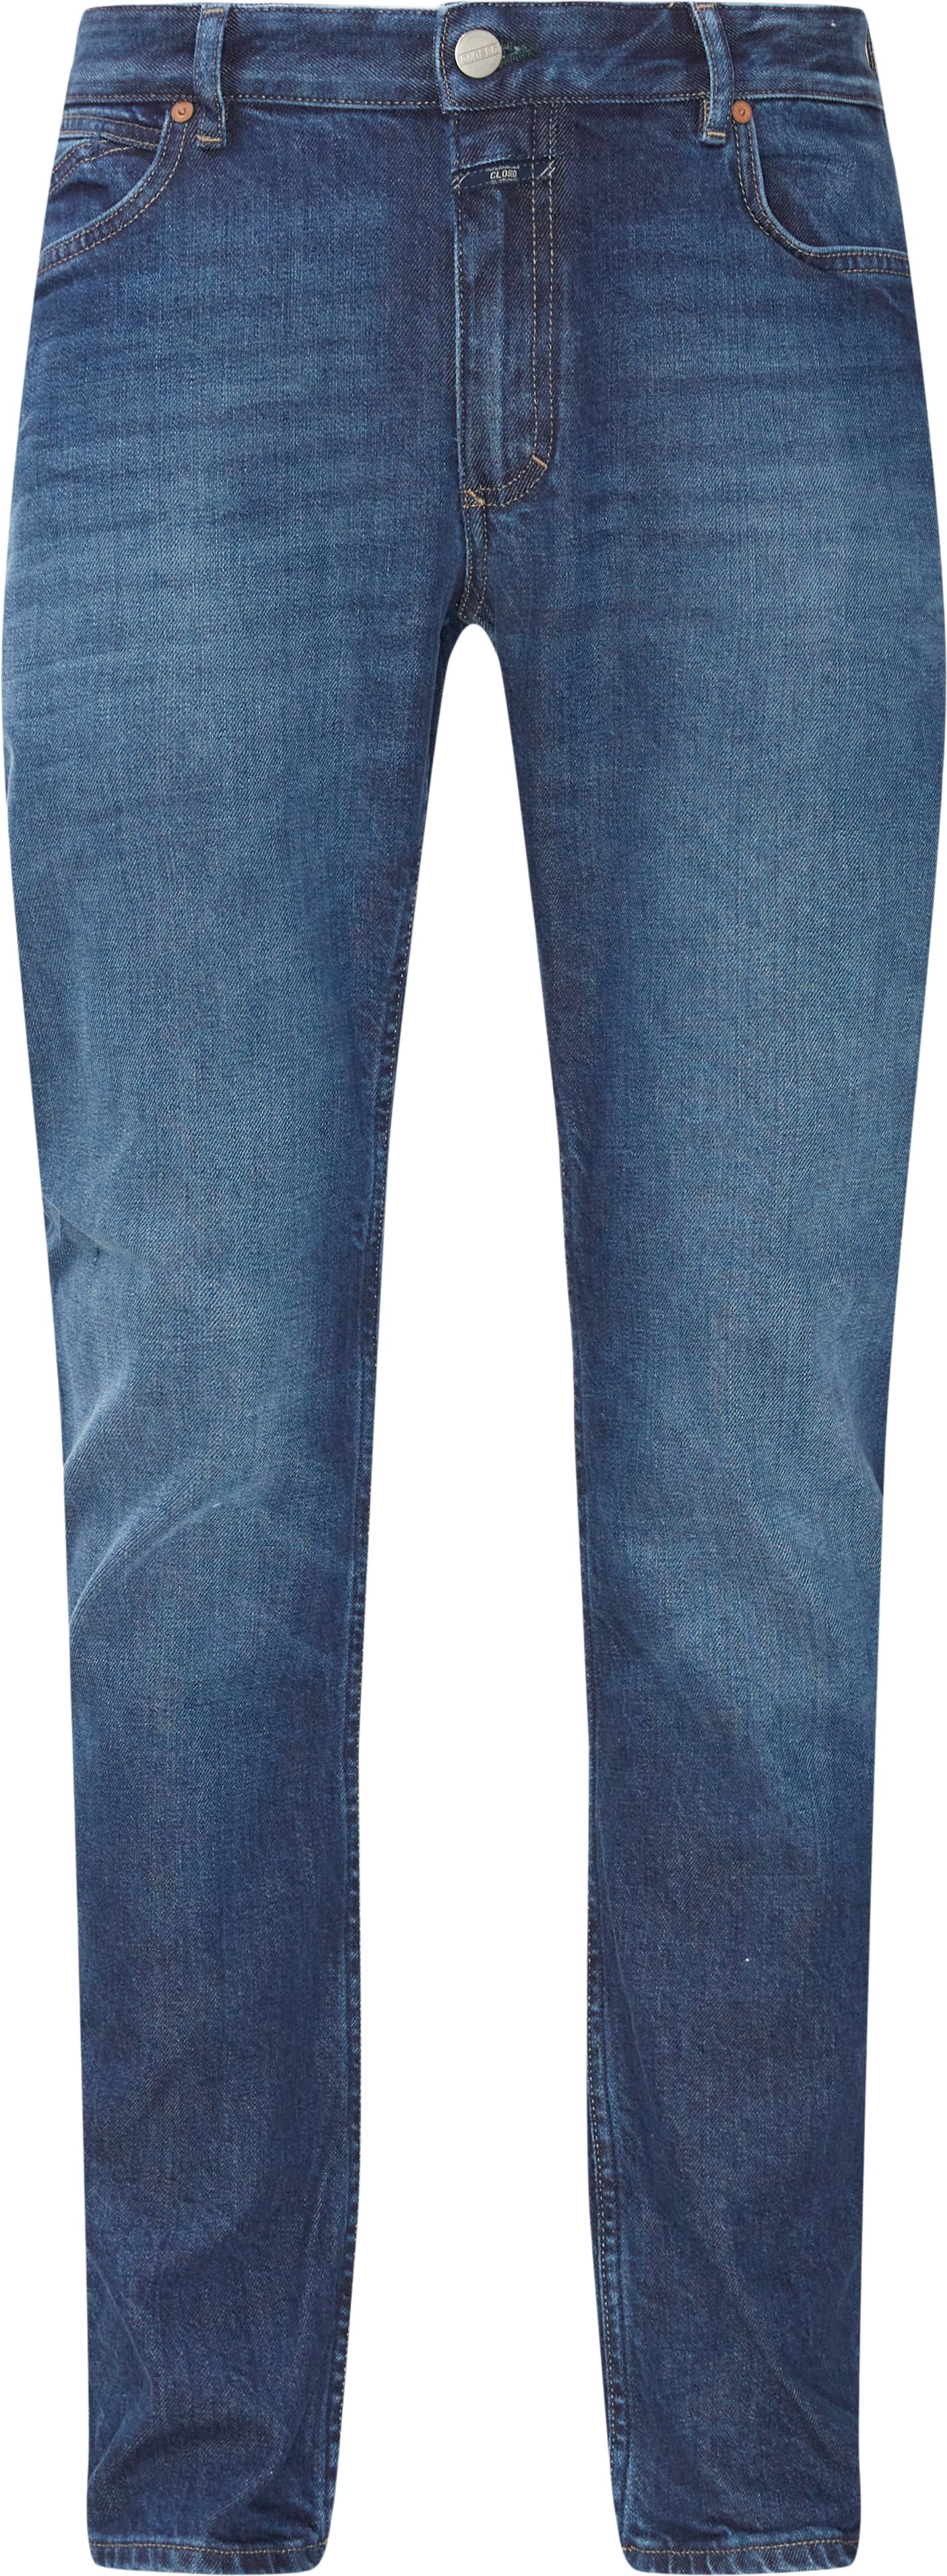 Jeans - Regular fit - Blue